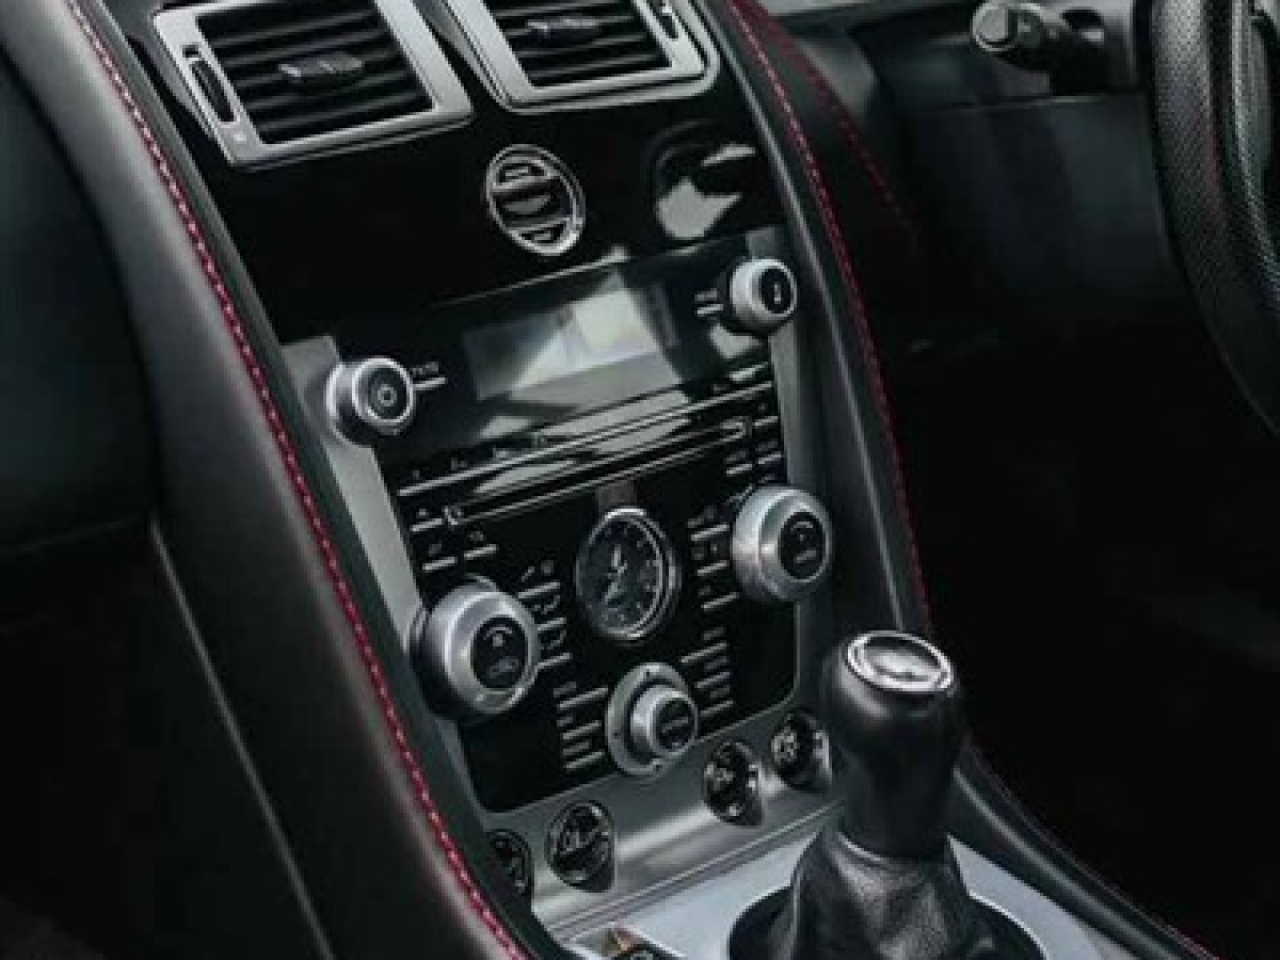 2015 Aston Martin V8 Vantage 4.7 Manual